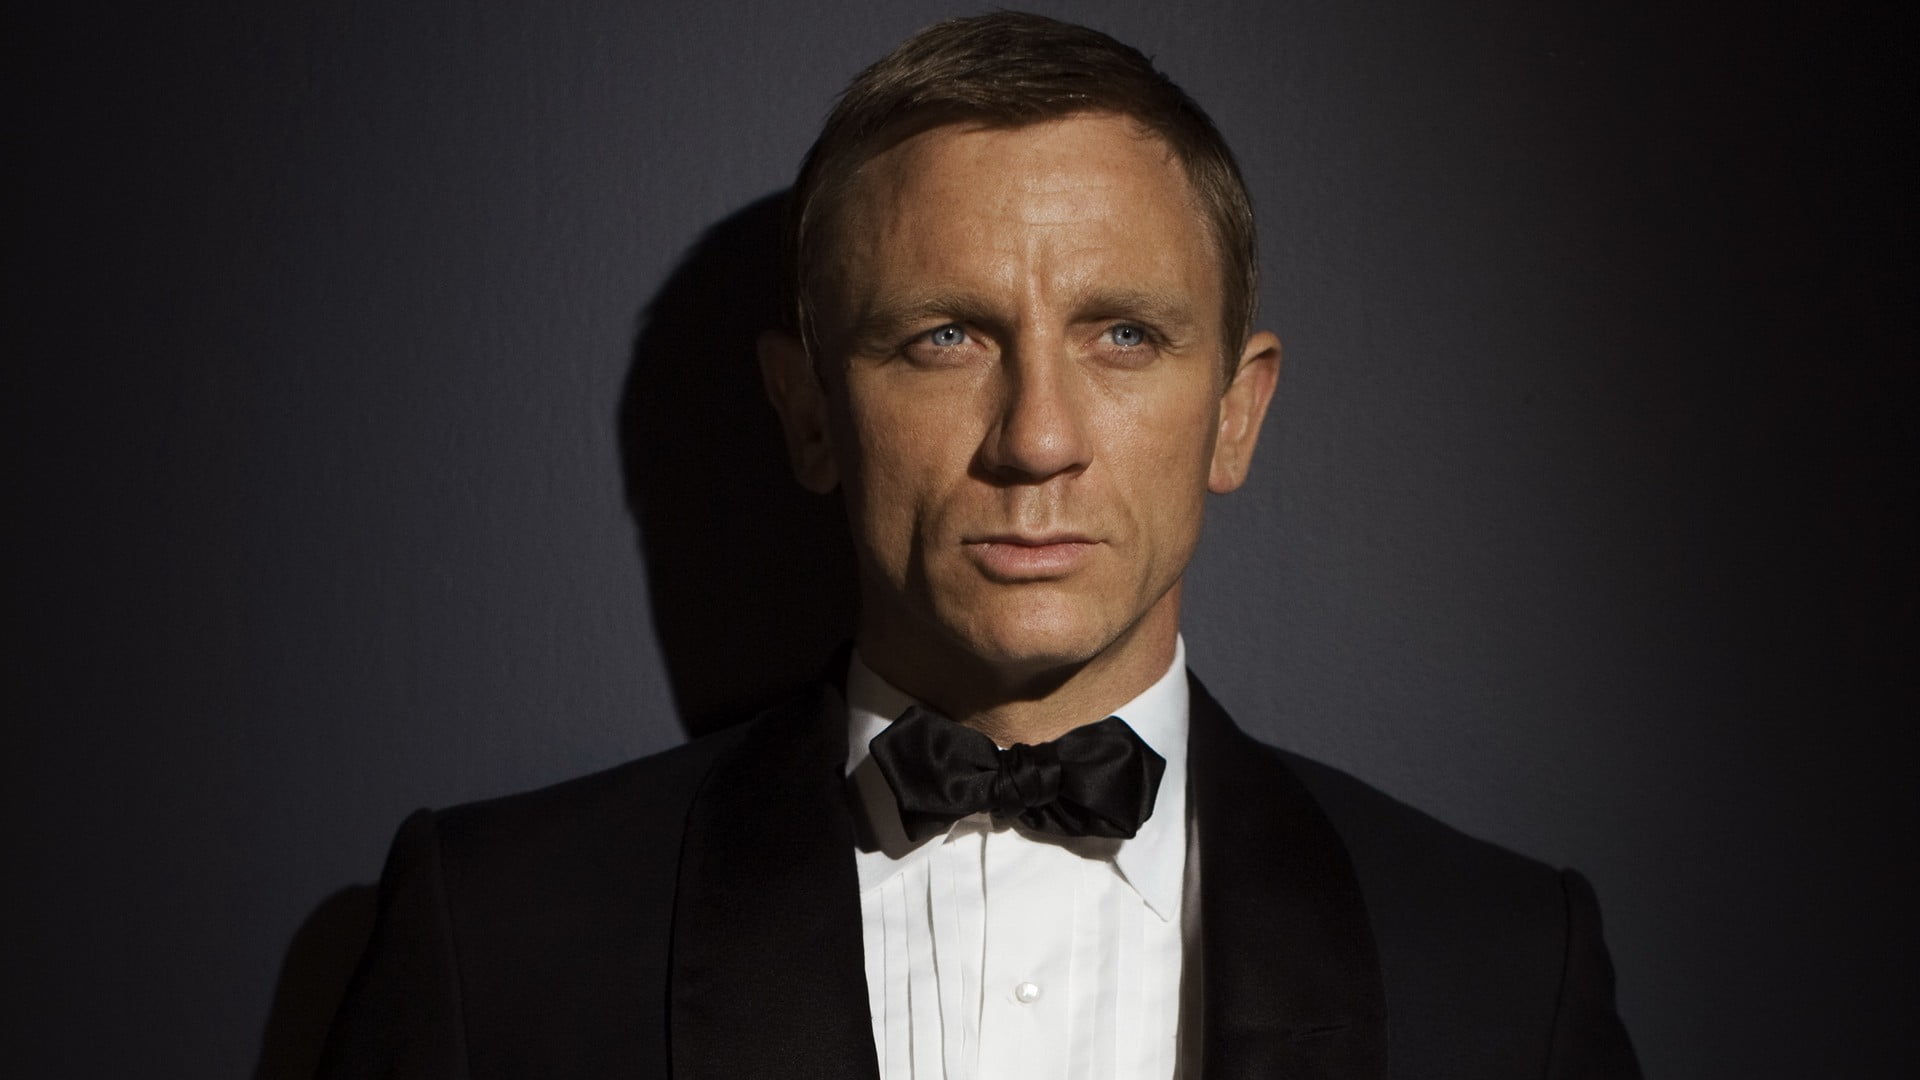 James Bond, Daniel Craig, actor, tuxedo, portrait, headshot, studio shot